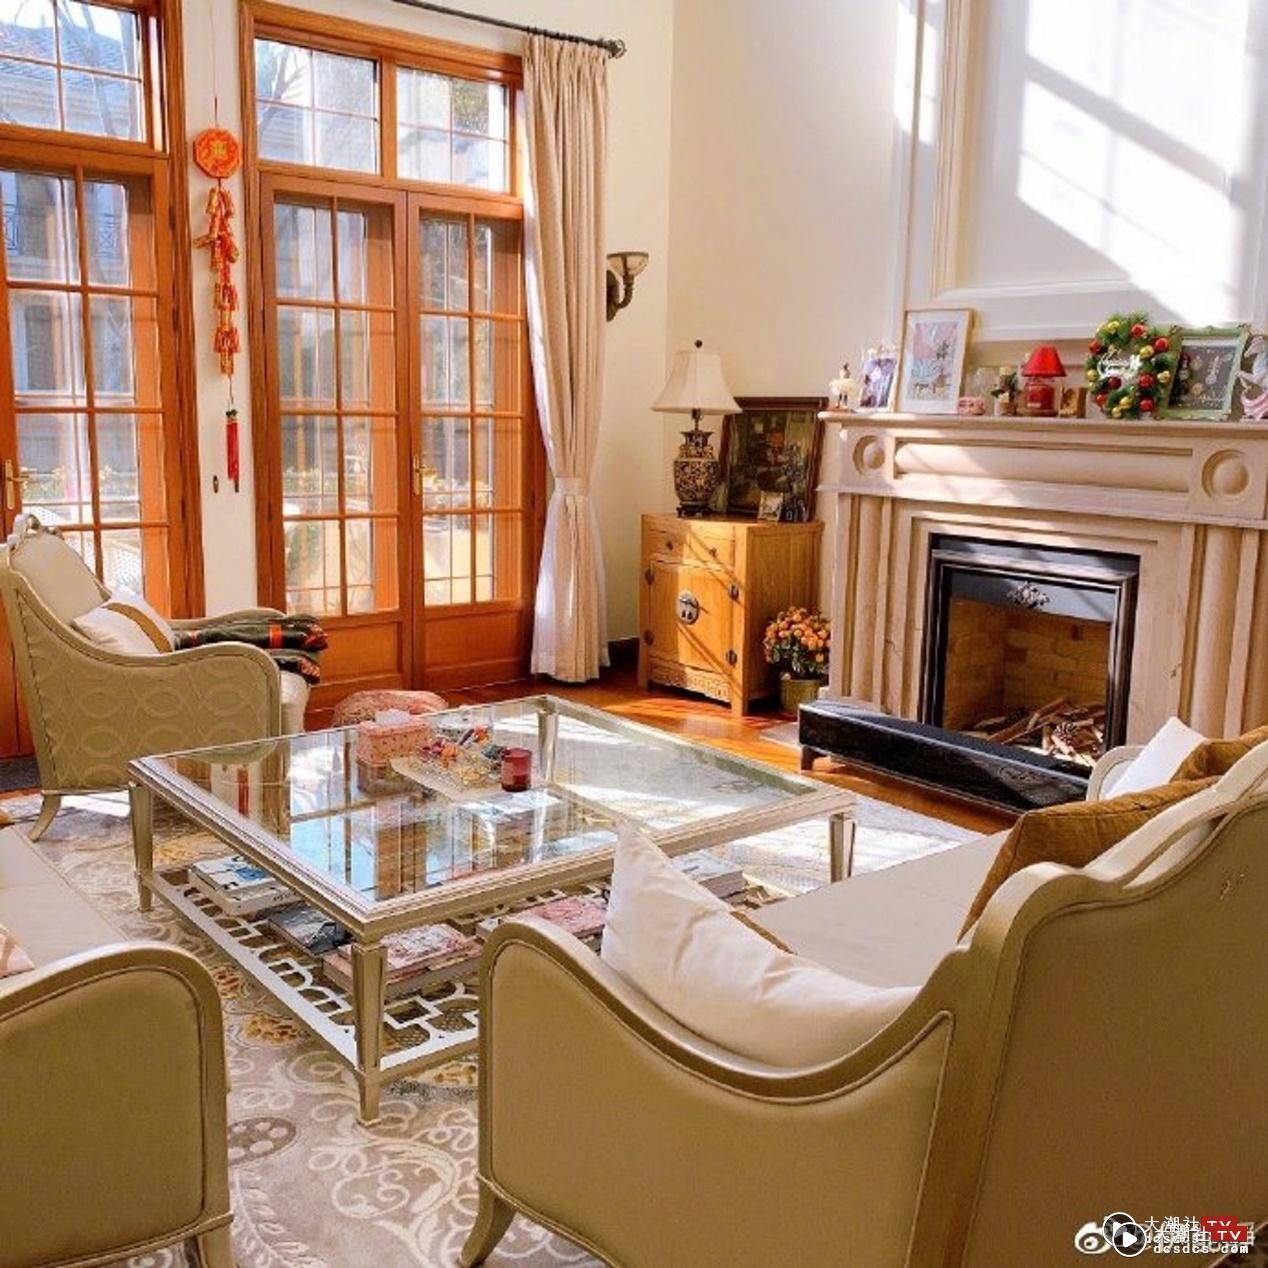 客厅走英式古典乡村风格，不但有一个大火炉，客厅地上更铺了一块灰白色的地繵，再加上透明玻璃桌和皇室风格的沙发营造出一股优雅韵味。 （微博：@伊能静）